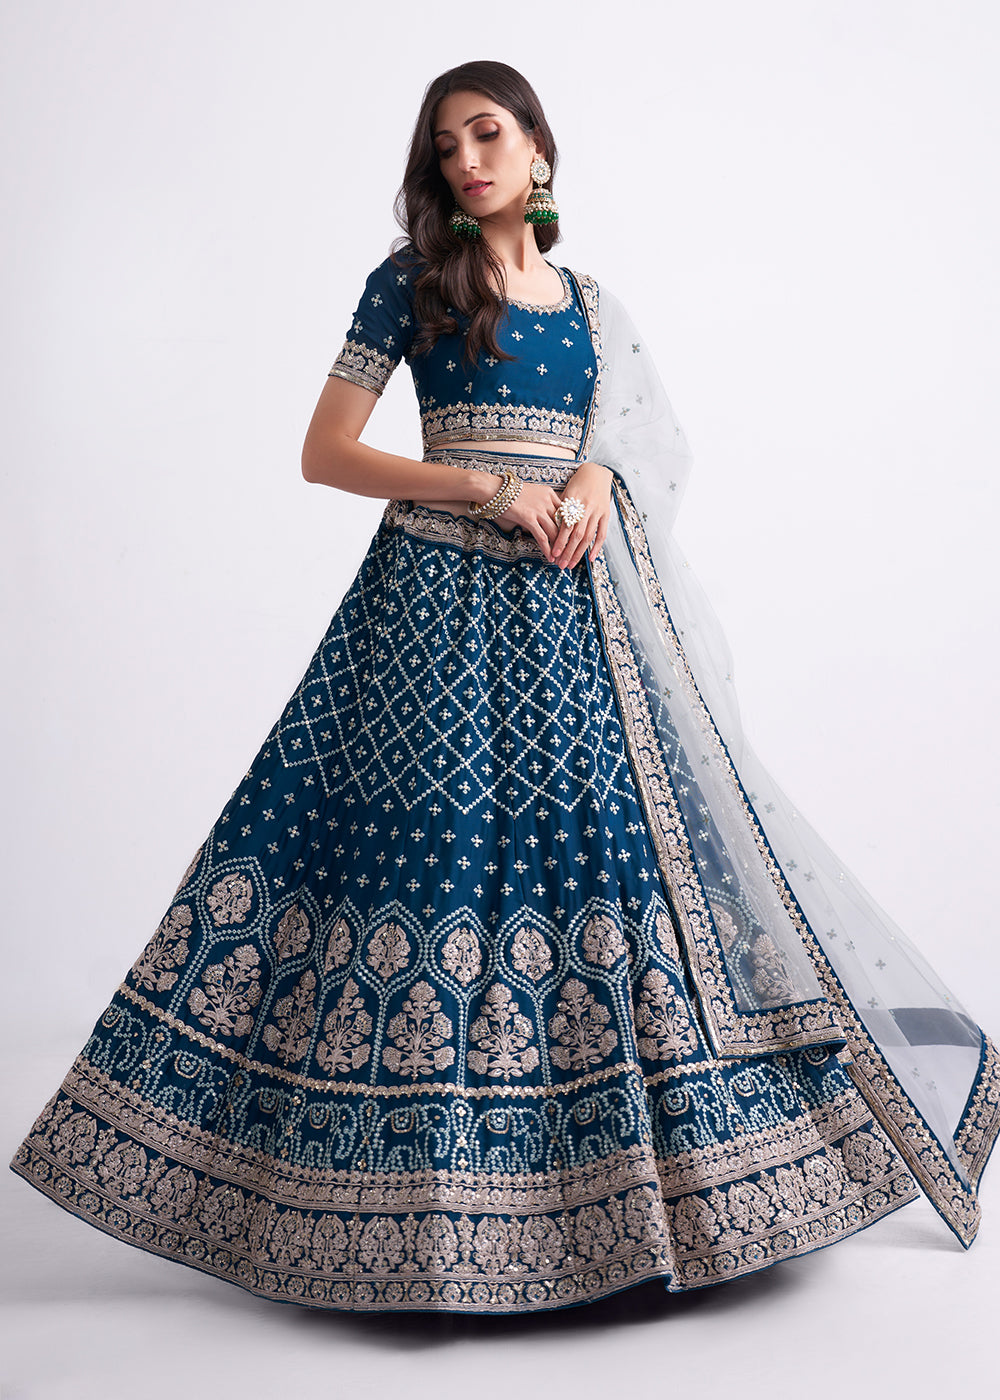 Buy Now Fabulous Teal Blue Wedding Style Designer Bridal Lehenga Choli Online in Canada, UK, USA & Worldwide at Empress Clothing. 